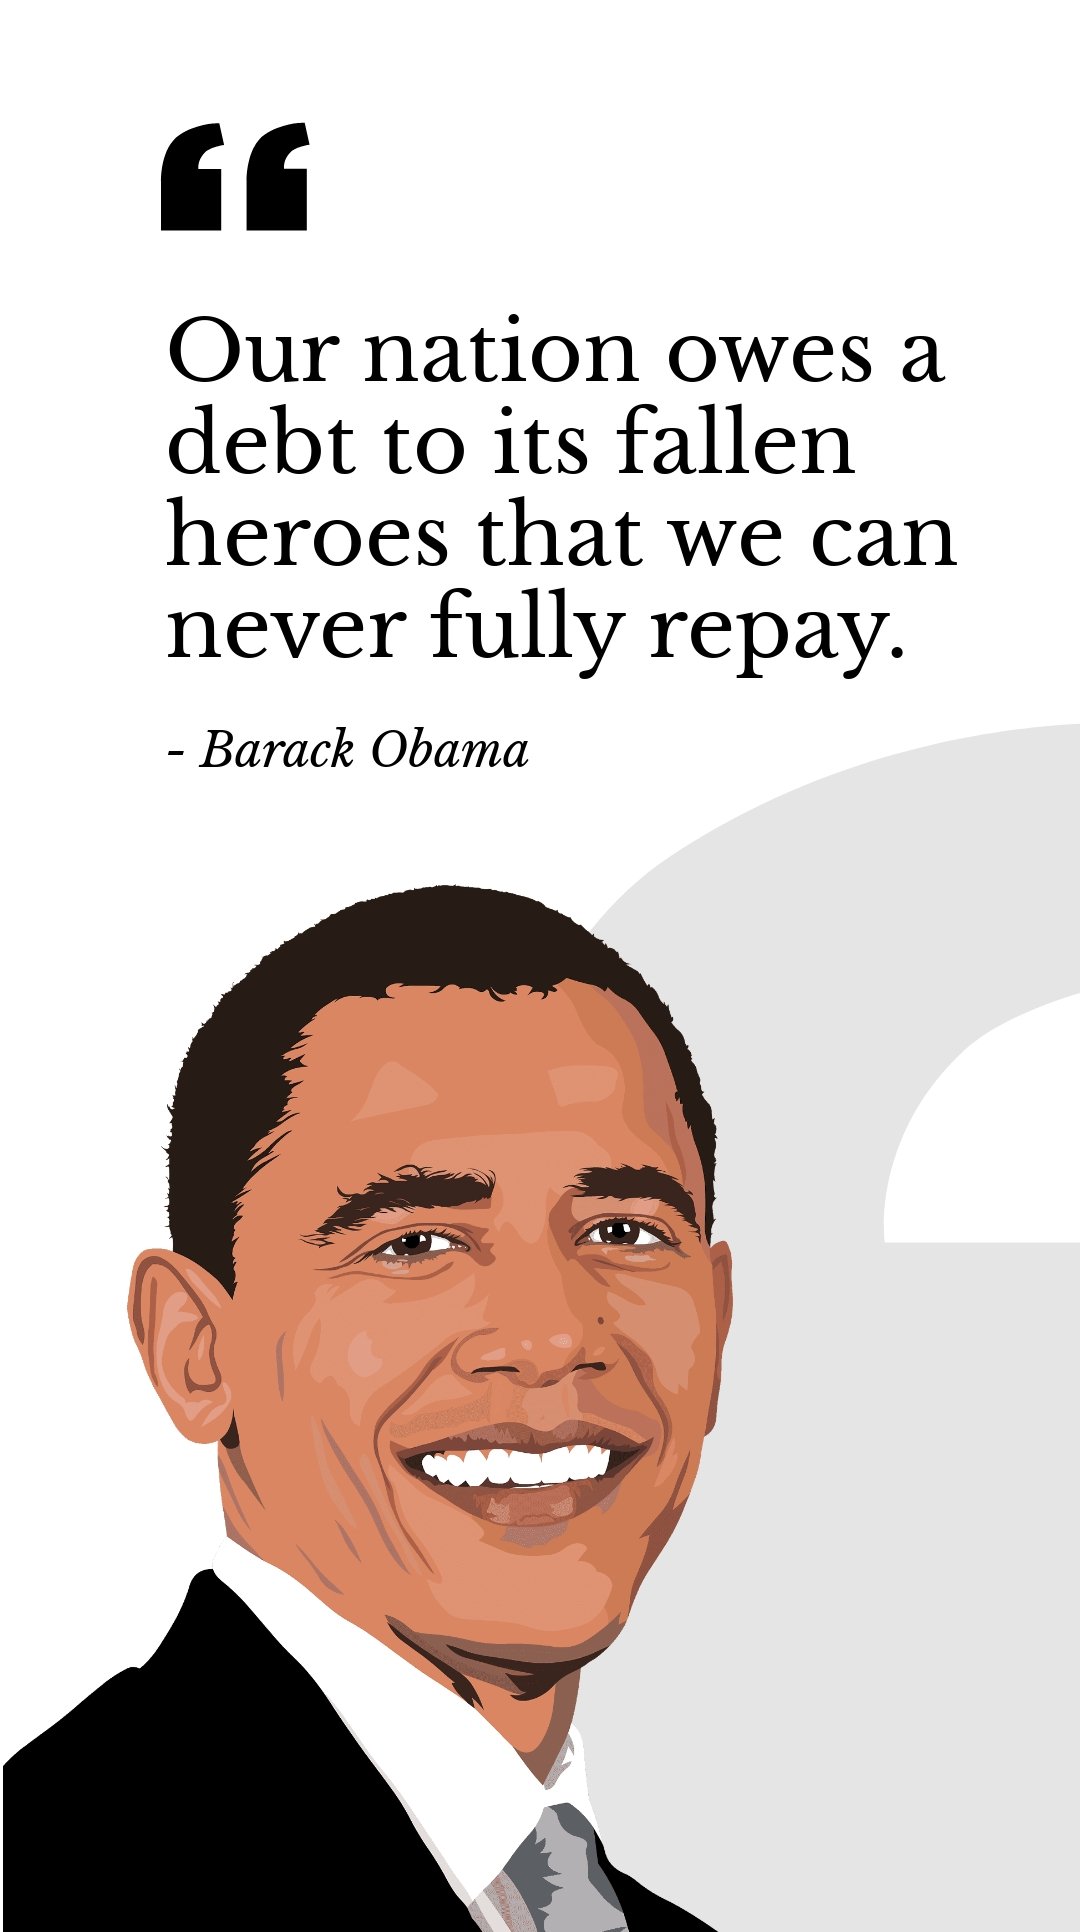 Barack Obama - 